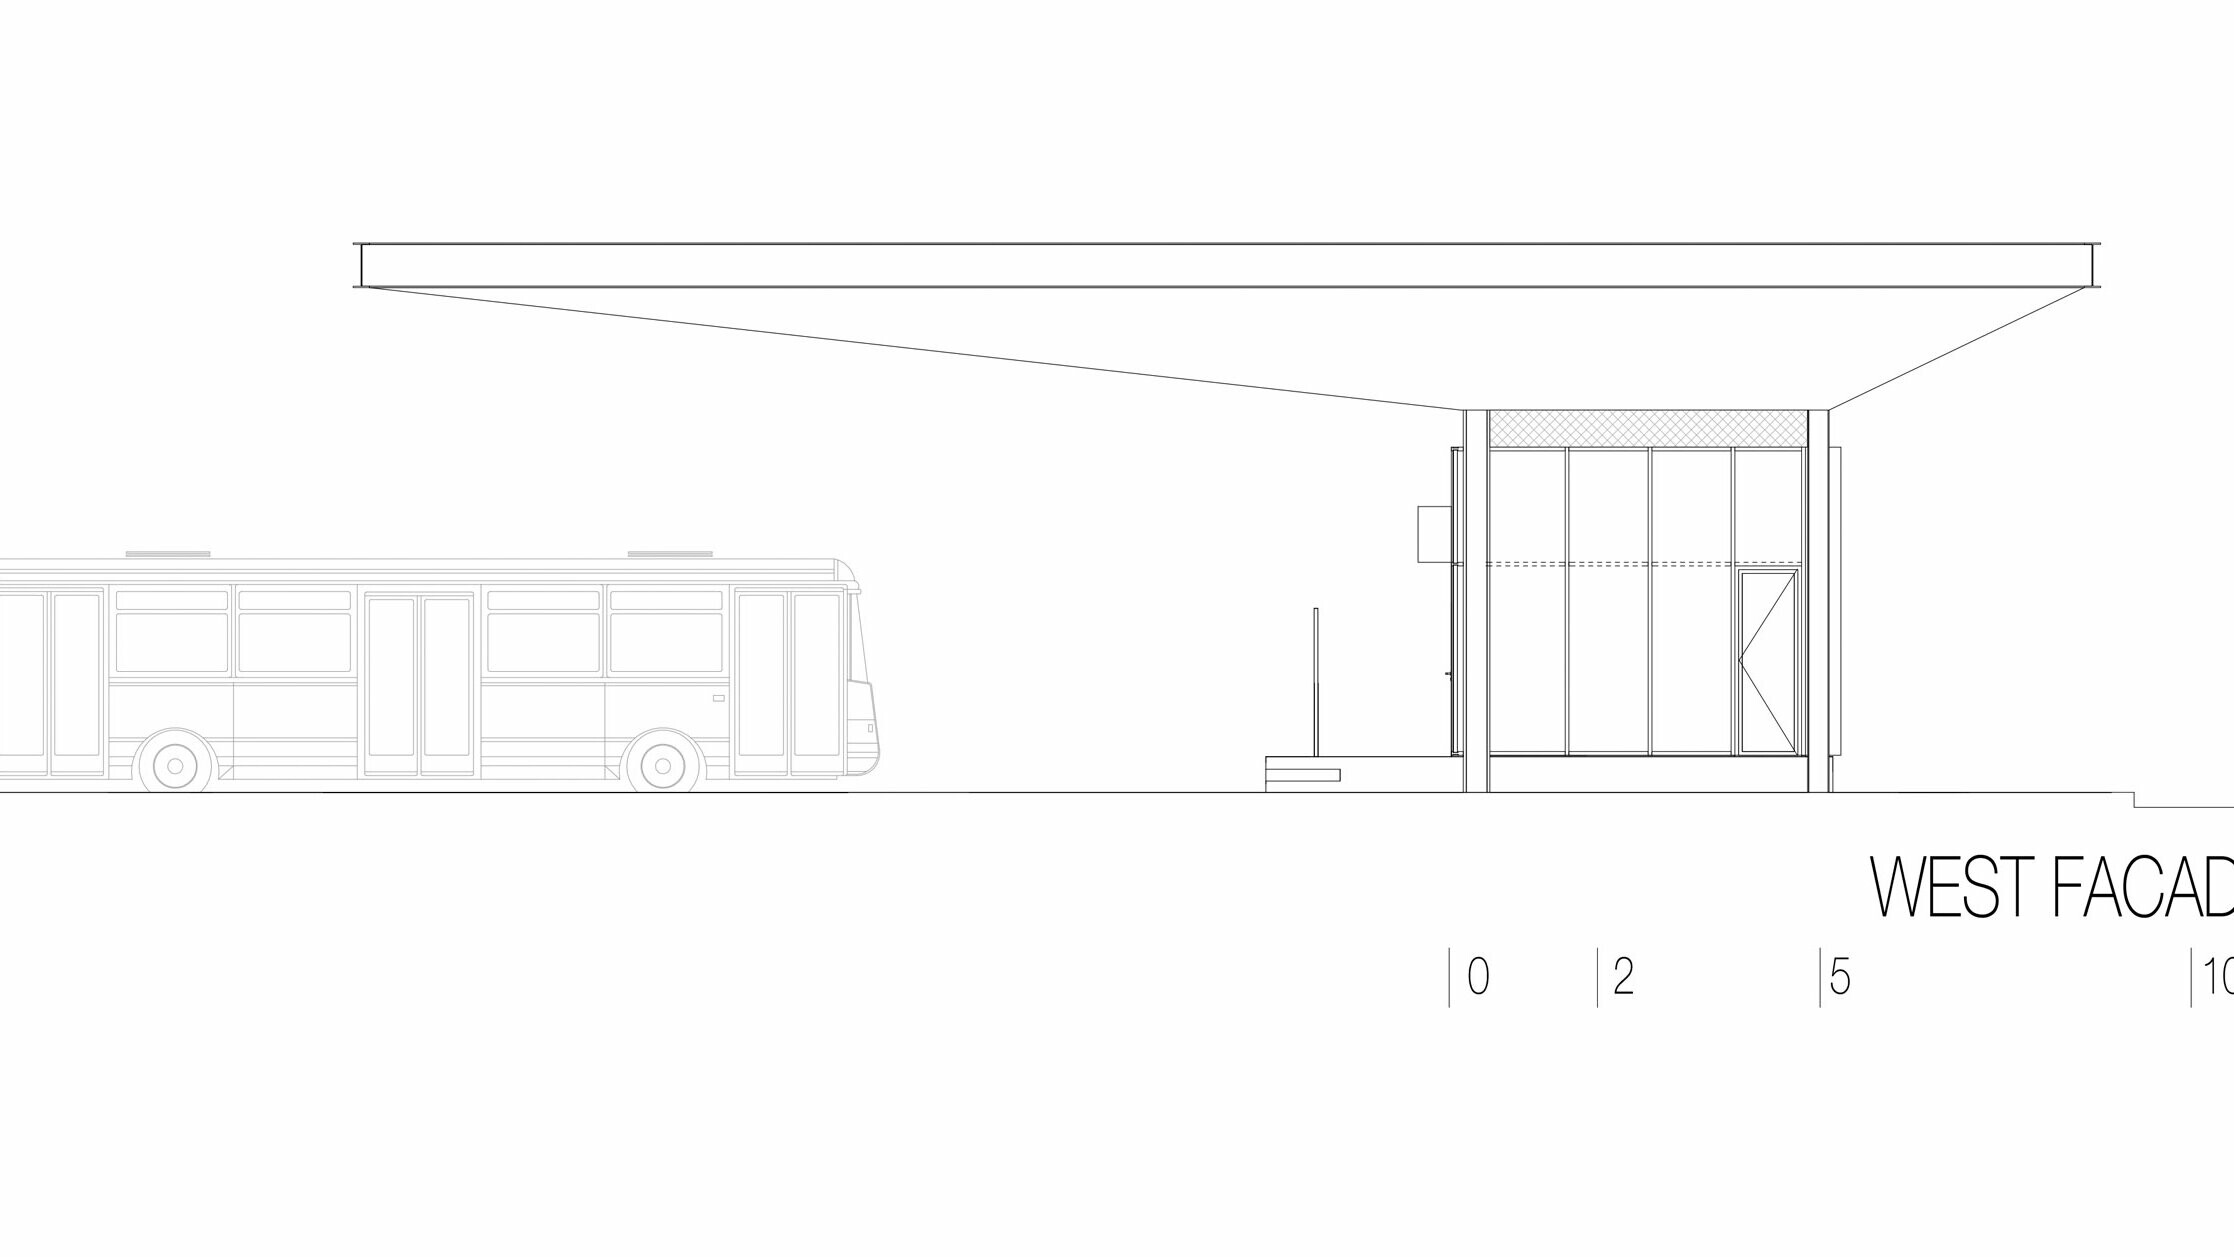 Výkres ukazuje západní pohled na autobusovou zastávku "Autobusni Kolodvor Slavonski Brod" v Chorvatsku. Vyobrazení zvýrazňuje dlouhou horizontální bílou střechu Prefalz PREFA, která se rozprostírá přes oblast pod ní. Vpravo na výkresu vidíte obdélníkovou budovu s velkými prosklenými plochami a jasnými liniemi. Vlevo je autobus, který znázorňuje proporce zastávky ve vztahu k vozidlu. Západní pohled zdůrazňuje moderní a funkční architekturu zastávky, která díky kombinaci skla a hliníku vytváří světlou a příjemnou atmosféru.